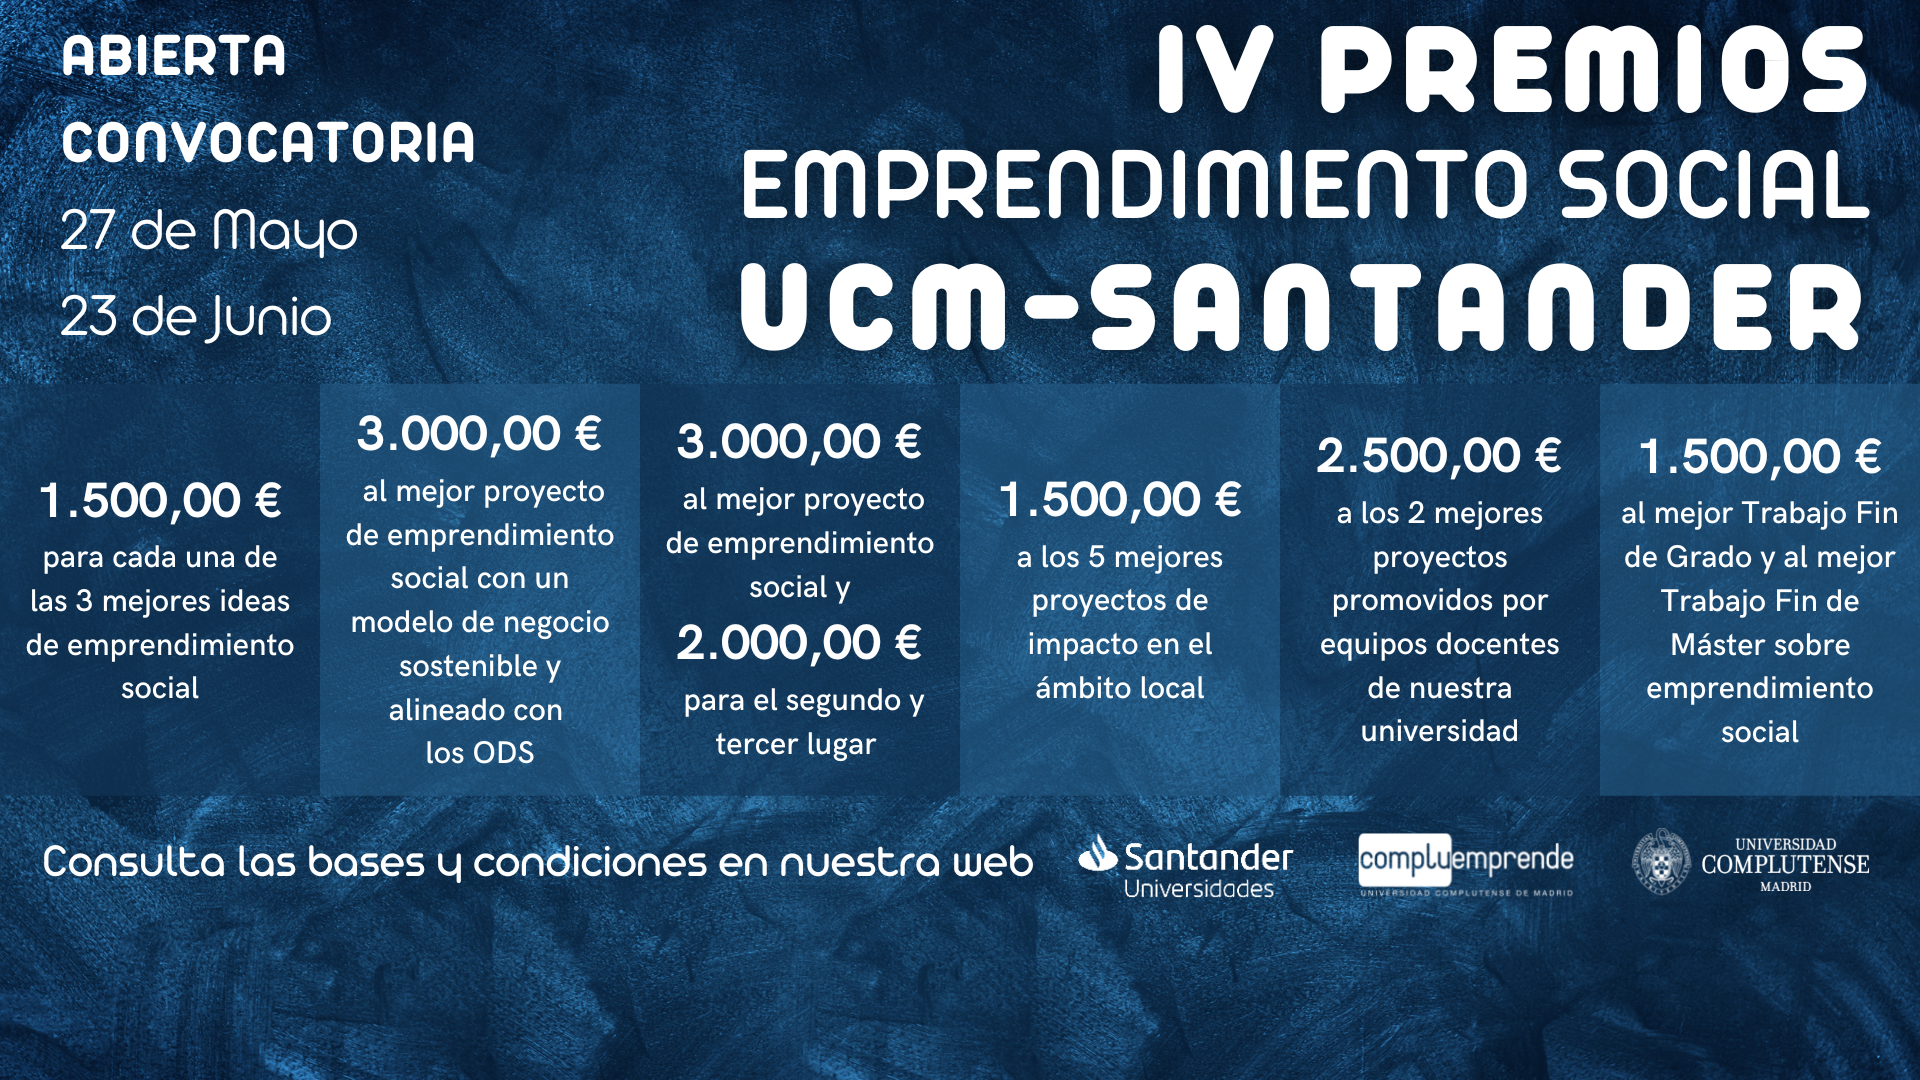 ABIERTA CONVOCATORIA: IV Premios de Emprendimiento Social UCM-Santander